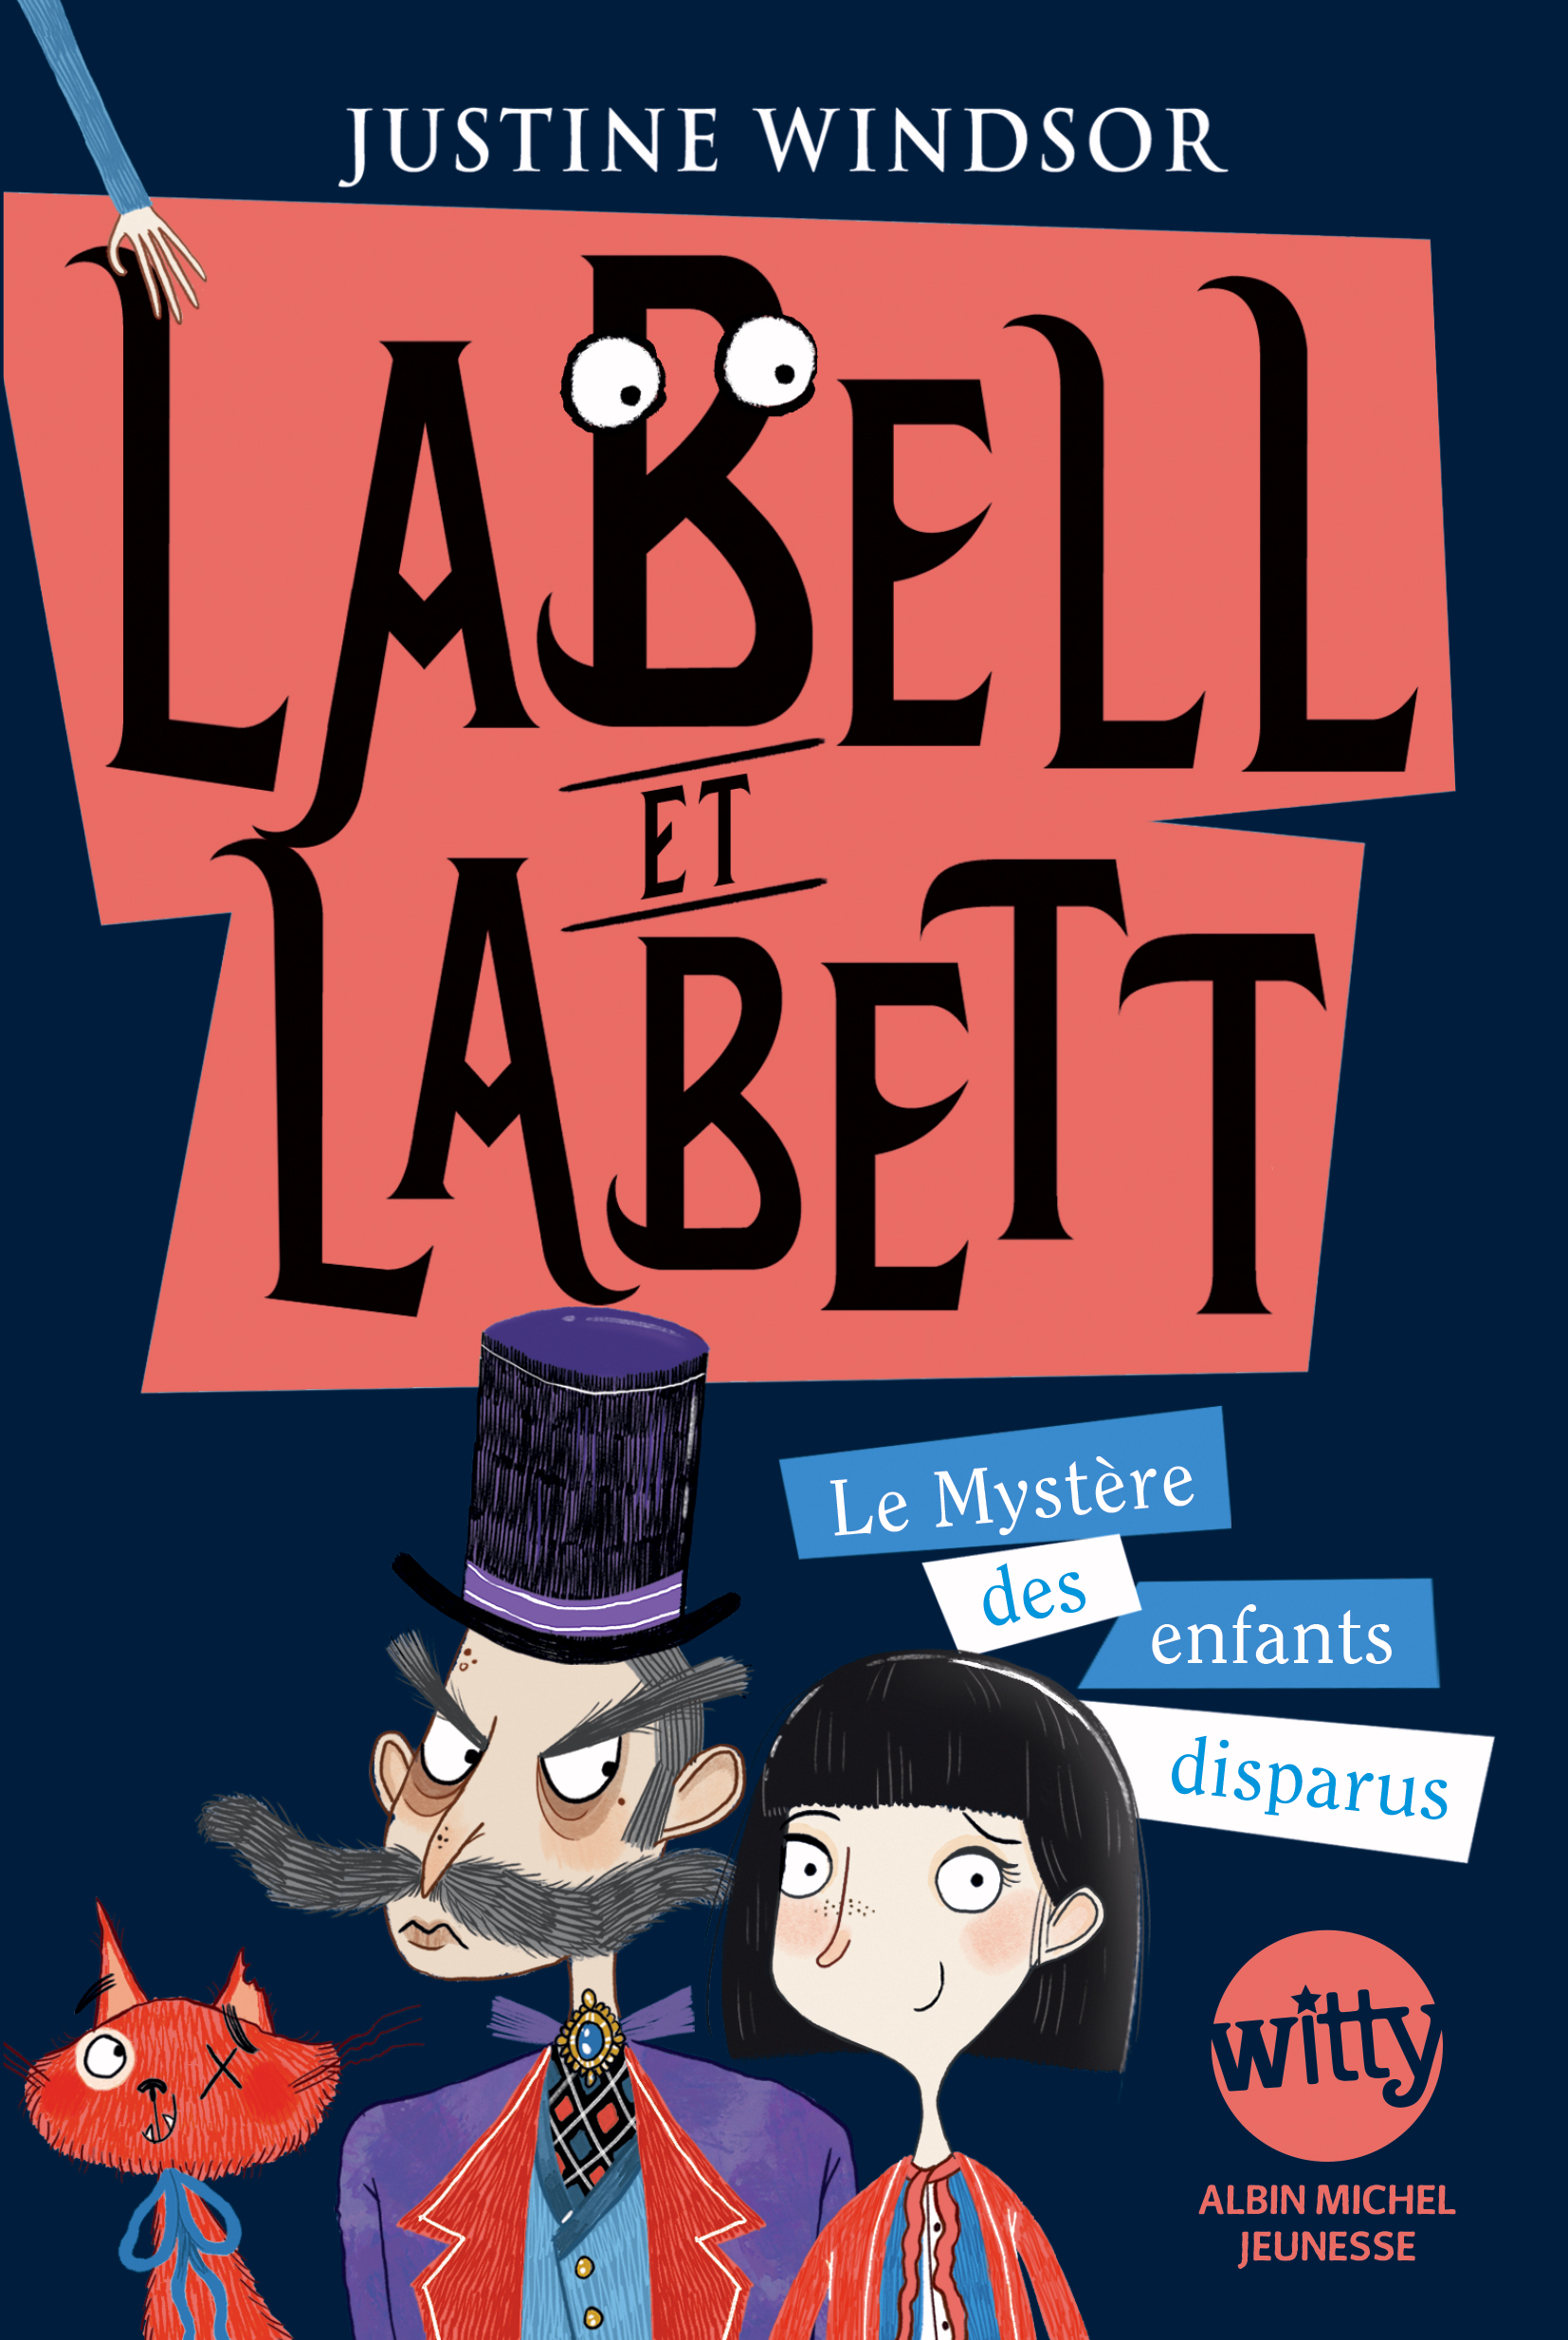 Couverture du livre Labell et Labett - tome 1